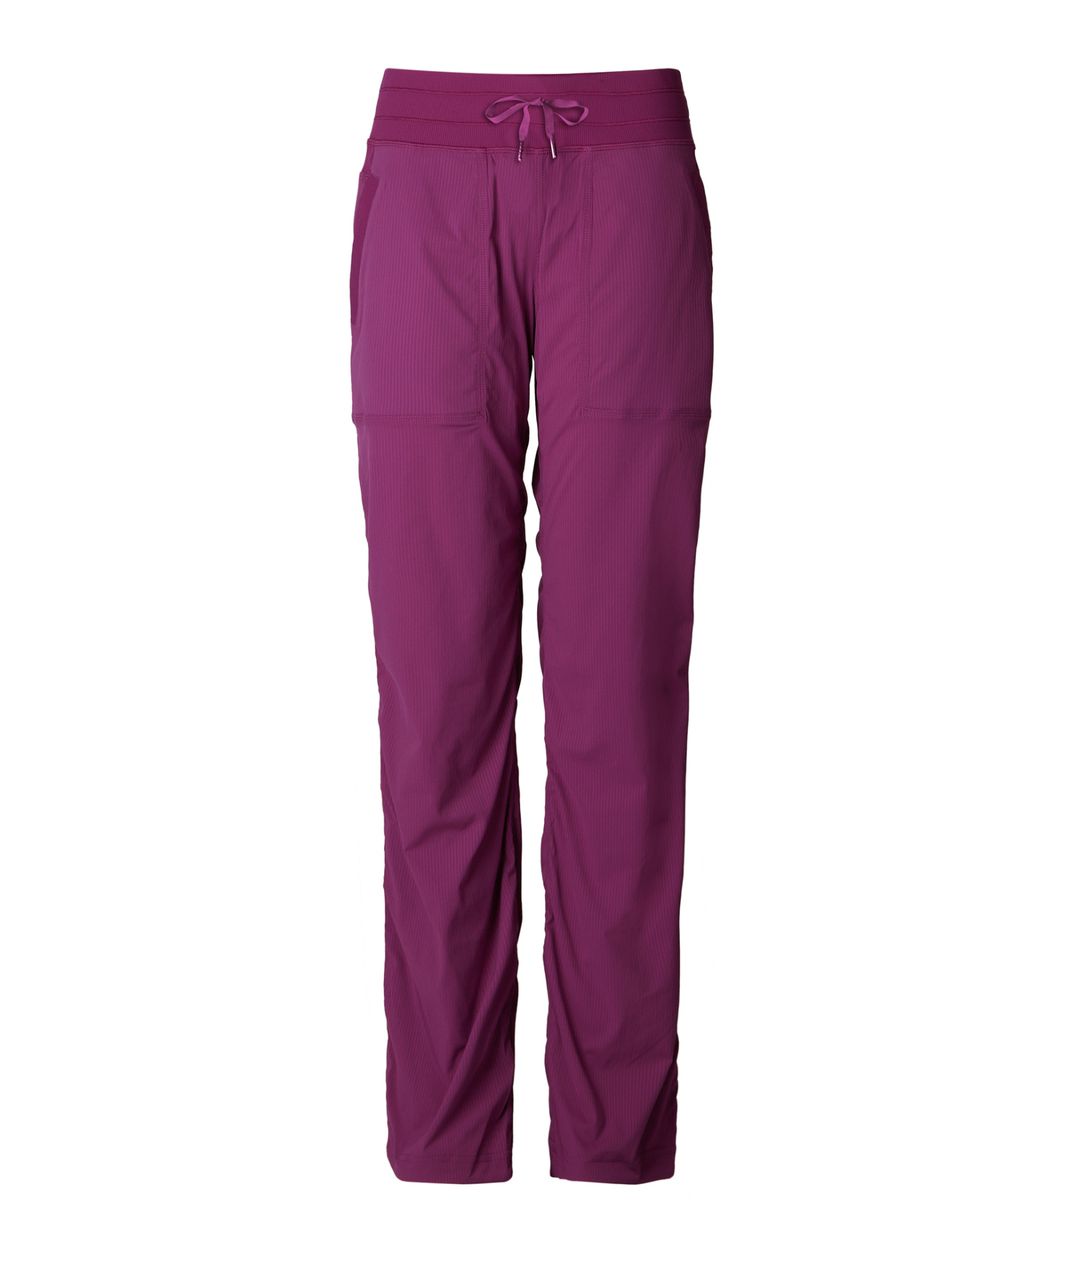 lululemon athletica, Pants & Jumpsuits, Lululemon In Flux Crop Regal Plum Size  4 Euc